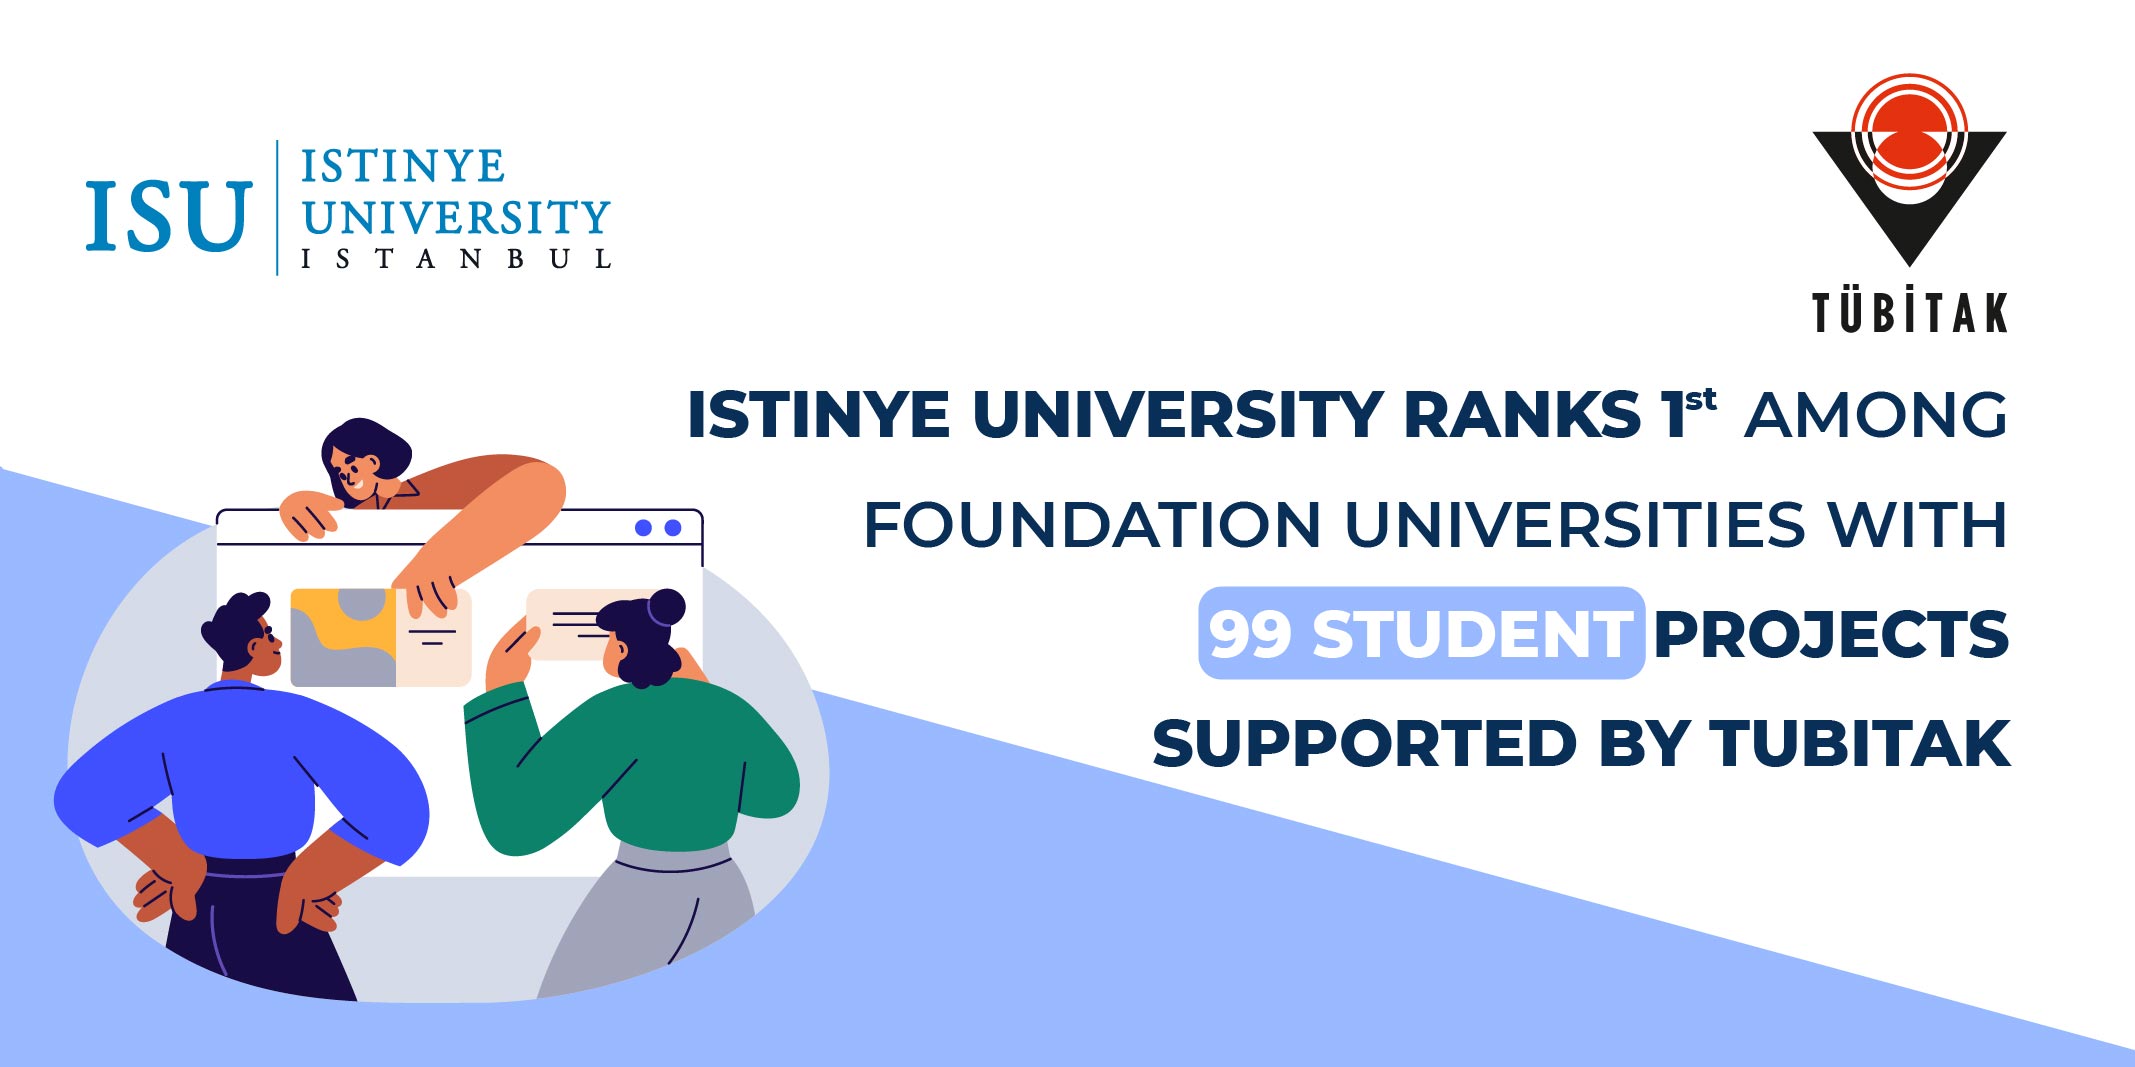 İstinye Üniversitesi Öğrencilerinin TÜBİTAK BİDEB Başarısı